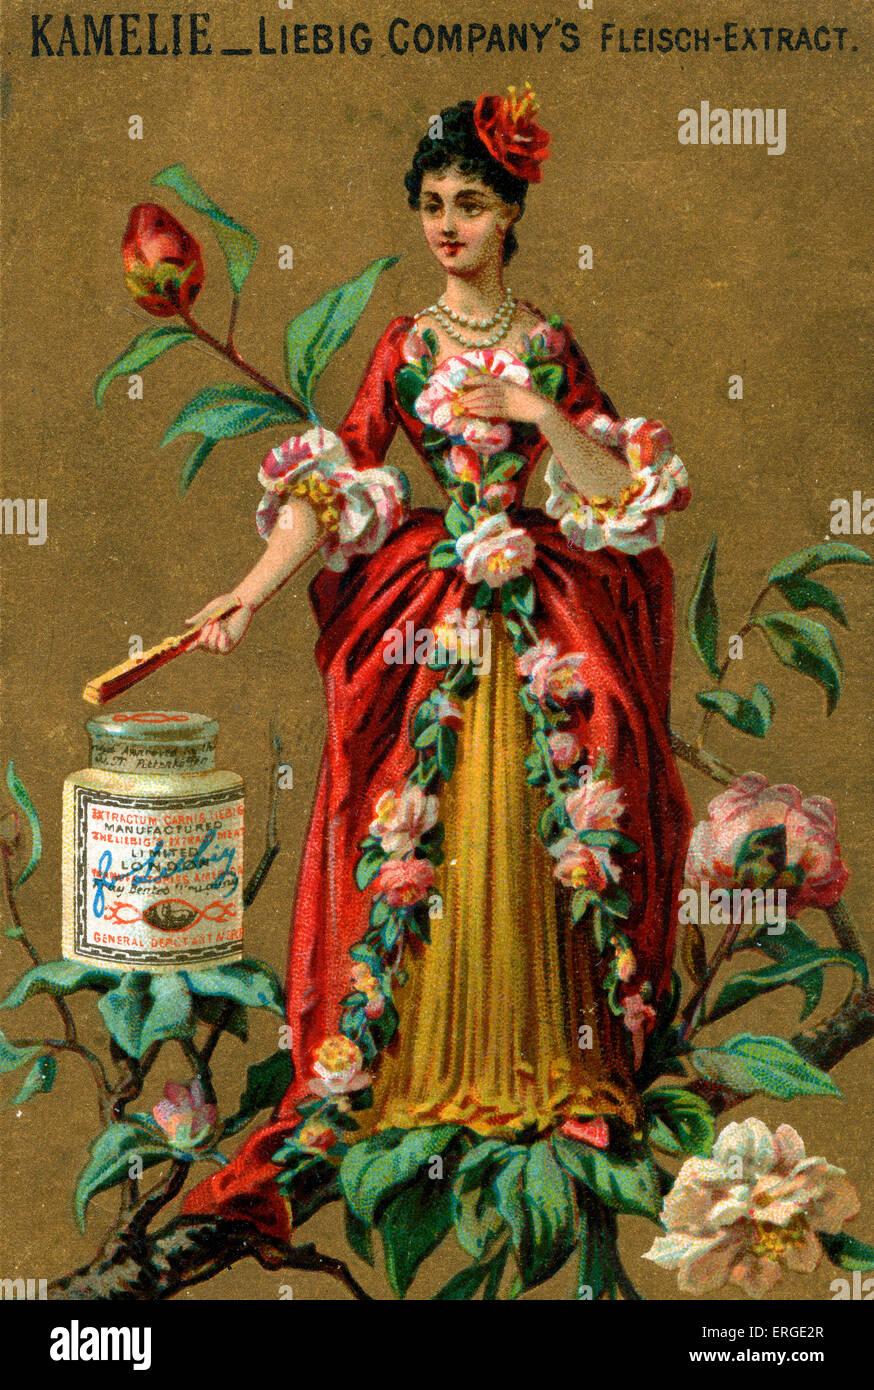 Kamelie personifiziert. Junge Dame mit Kamelien geschmückt. Sie steht auf einem Zweig. Liebig-Card-Serie (1888). Stockfoto